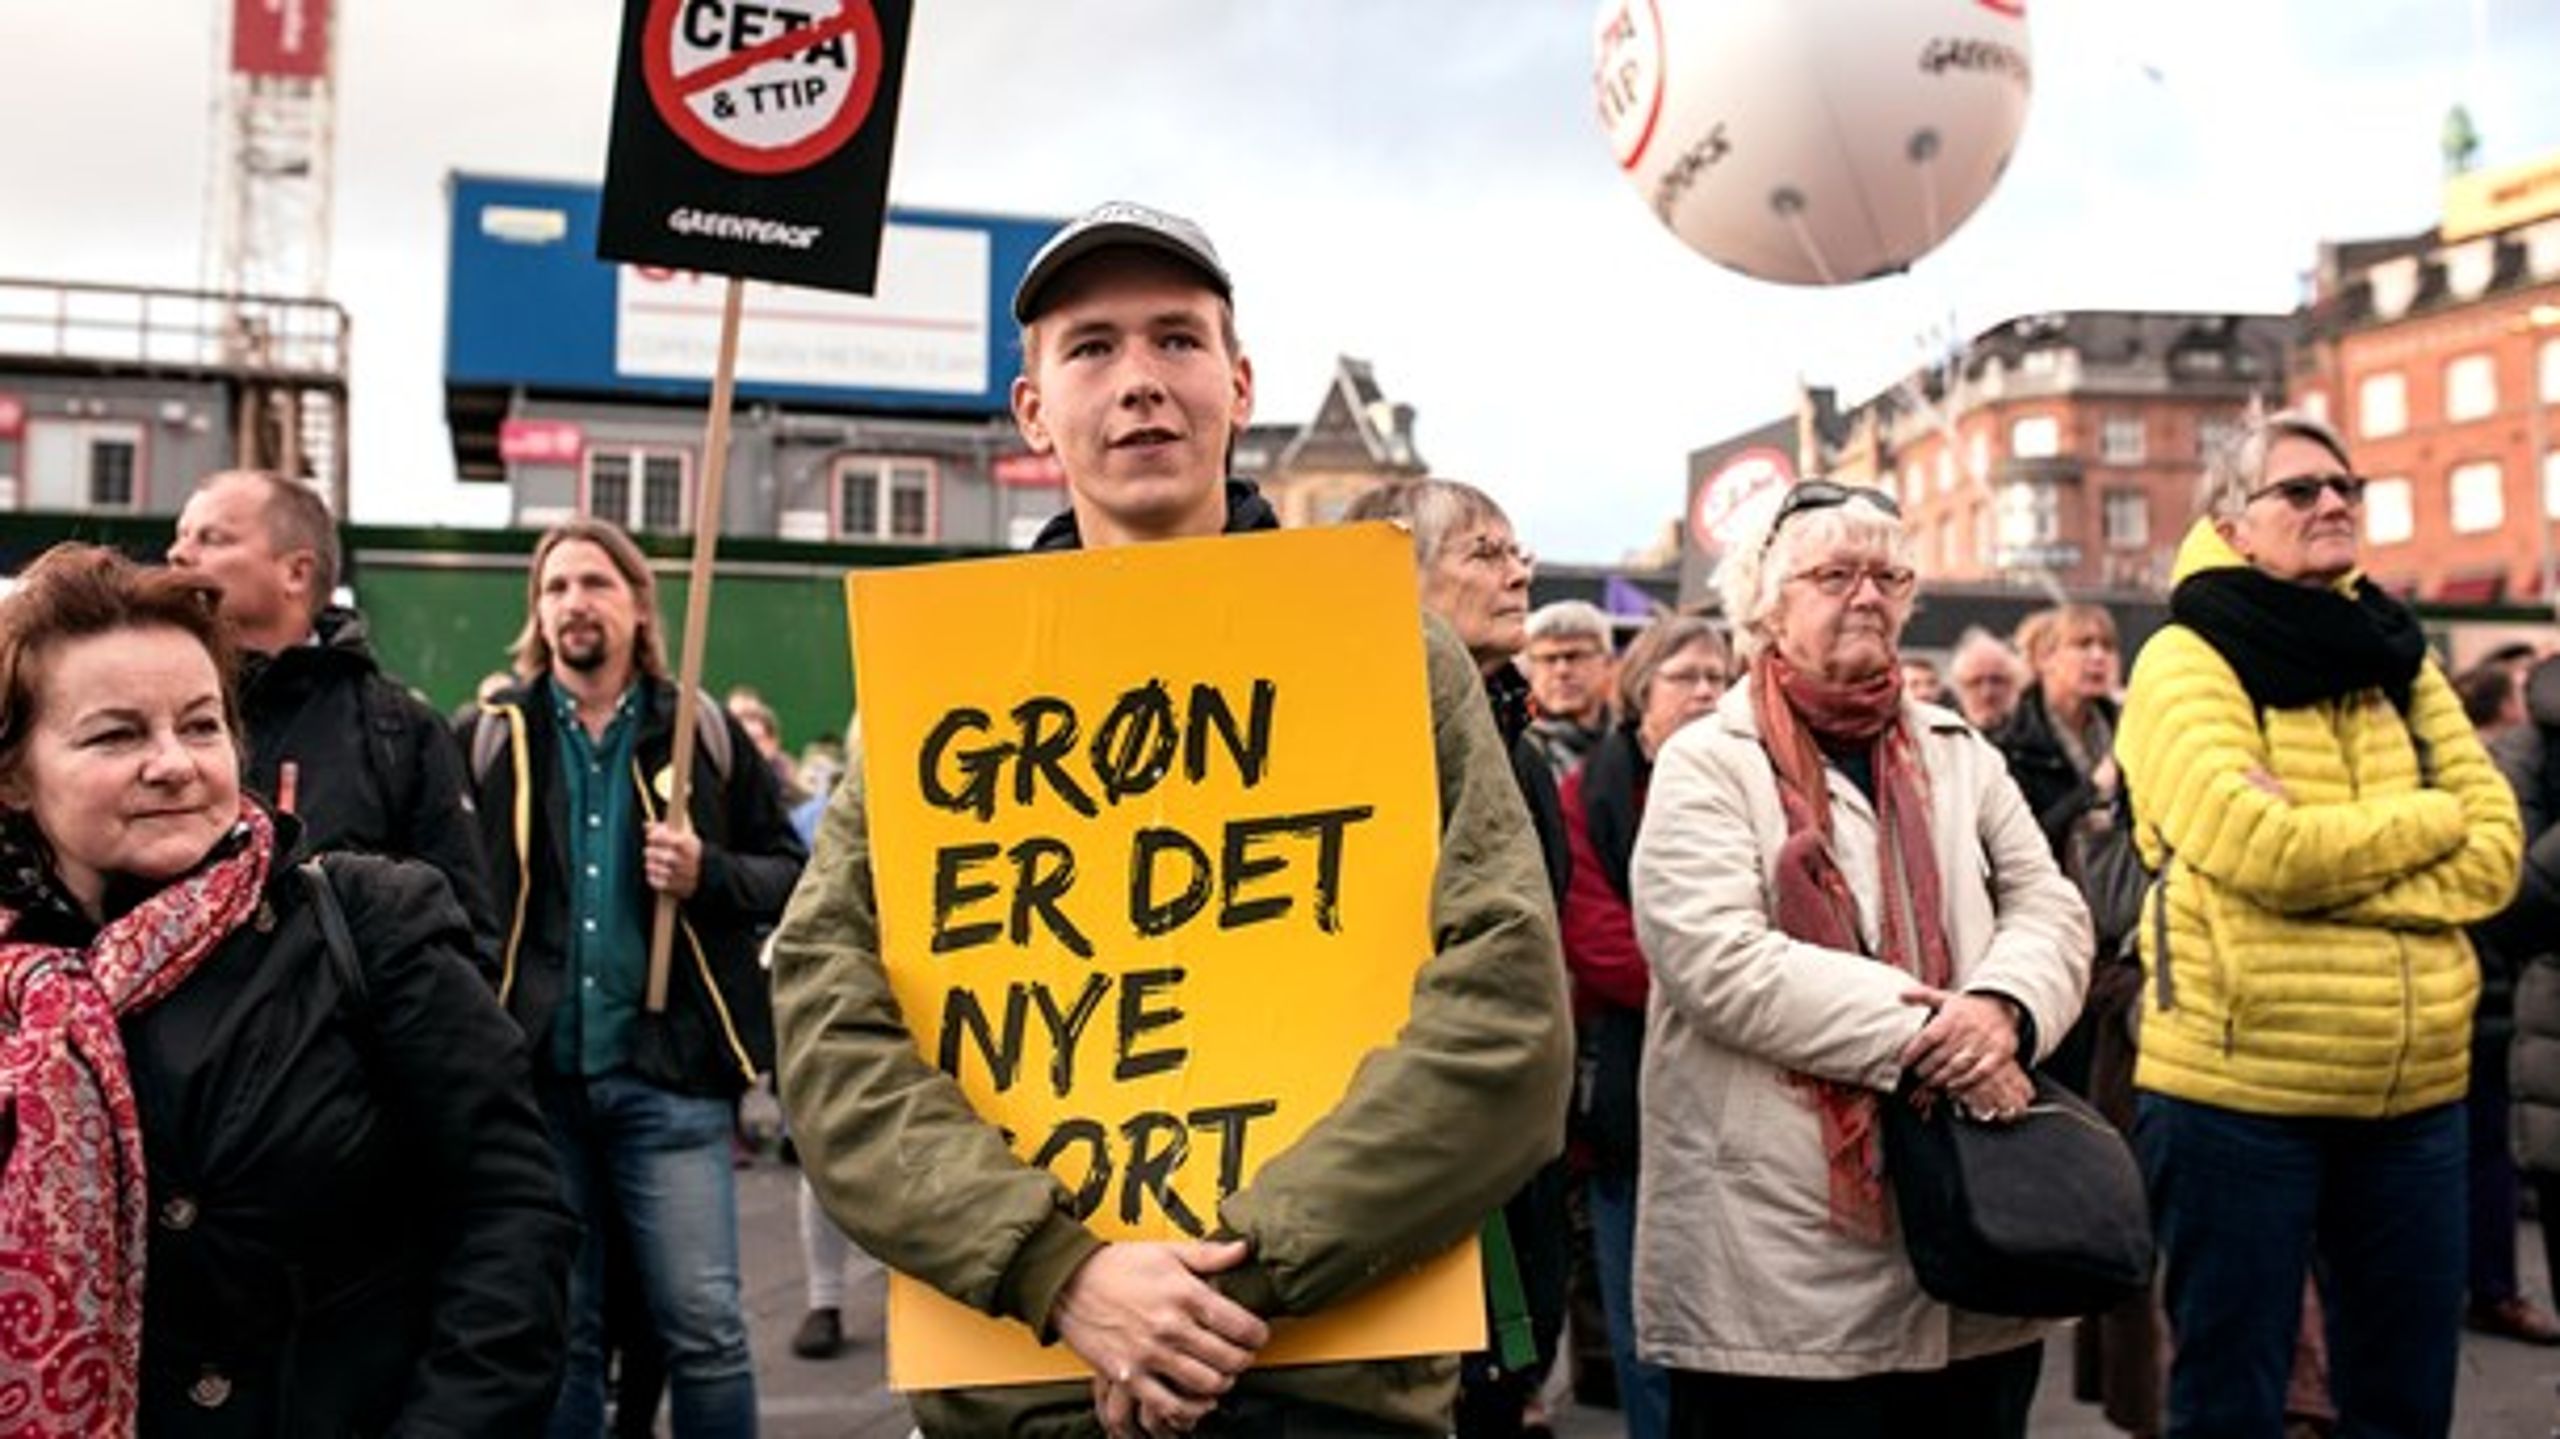 VÆKKET: Regeringens svigtende miljø- og klimapolitik har skabt en folkebevægelse, mener Maria Reumert Gjerding.